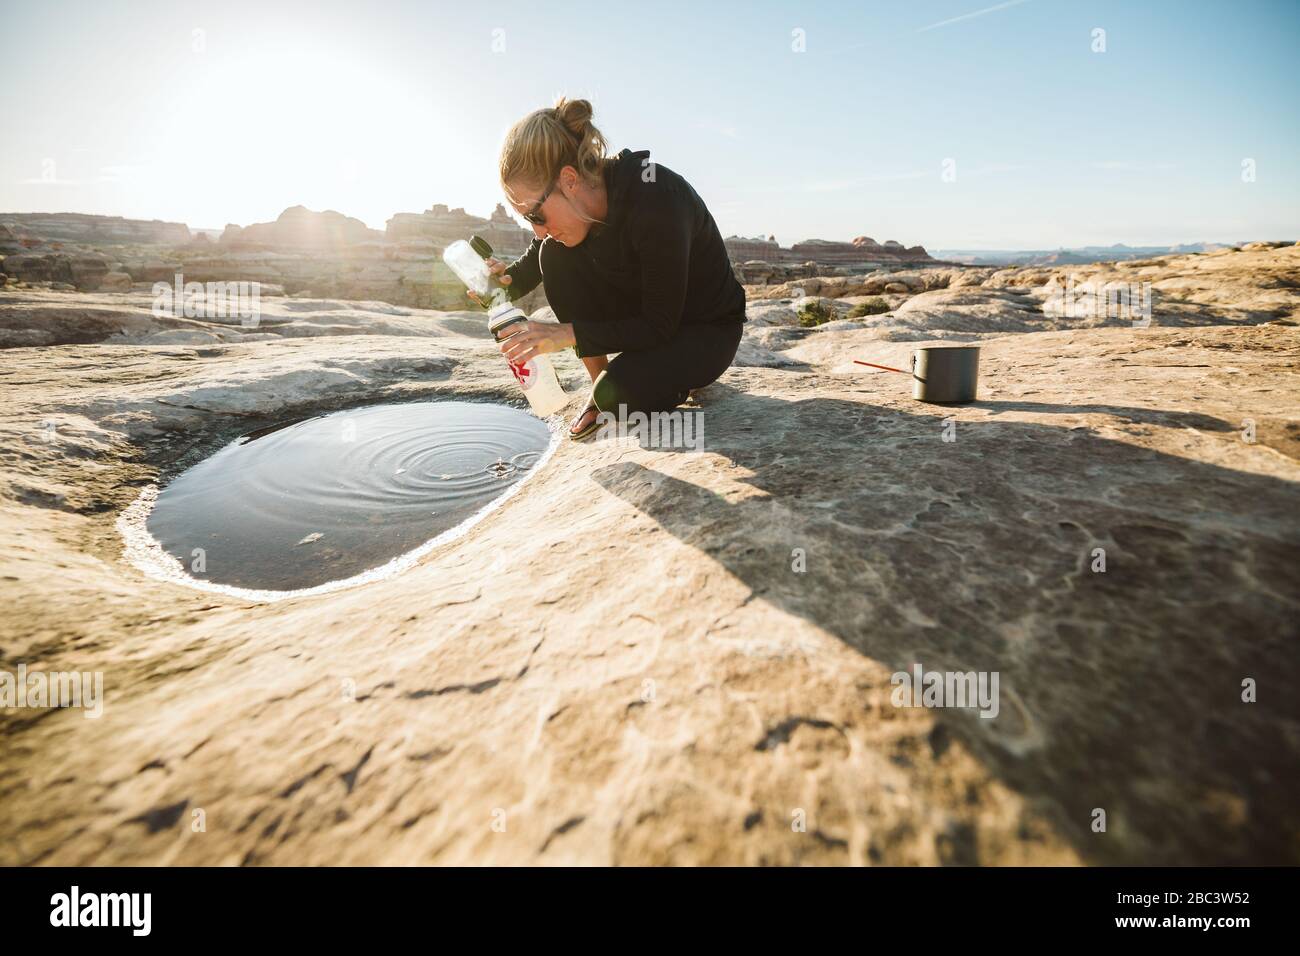 la camper féminine recueille l'eau pour la cuisson à partir d'une flaque peu profonde Banque D'Images